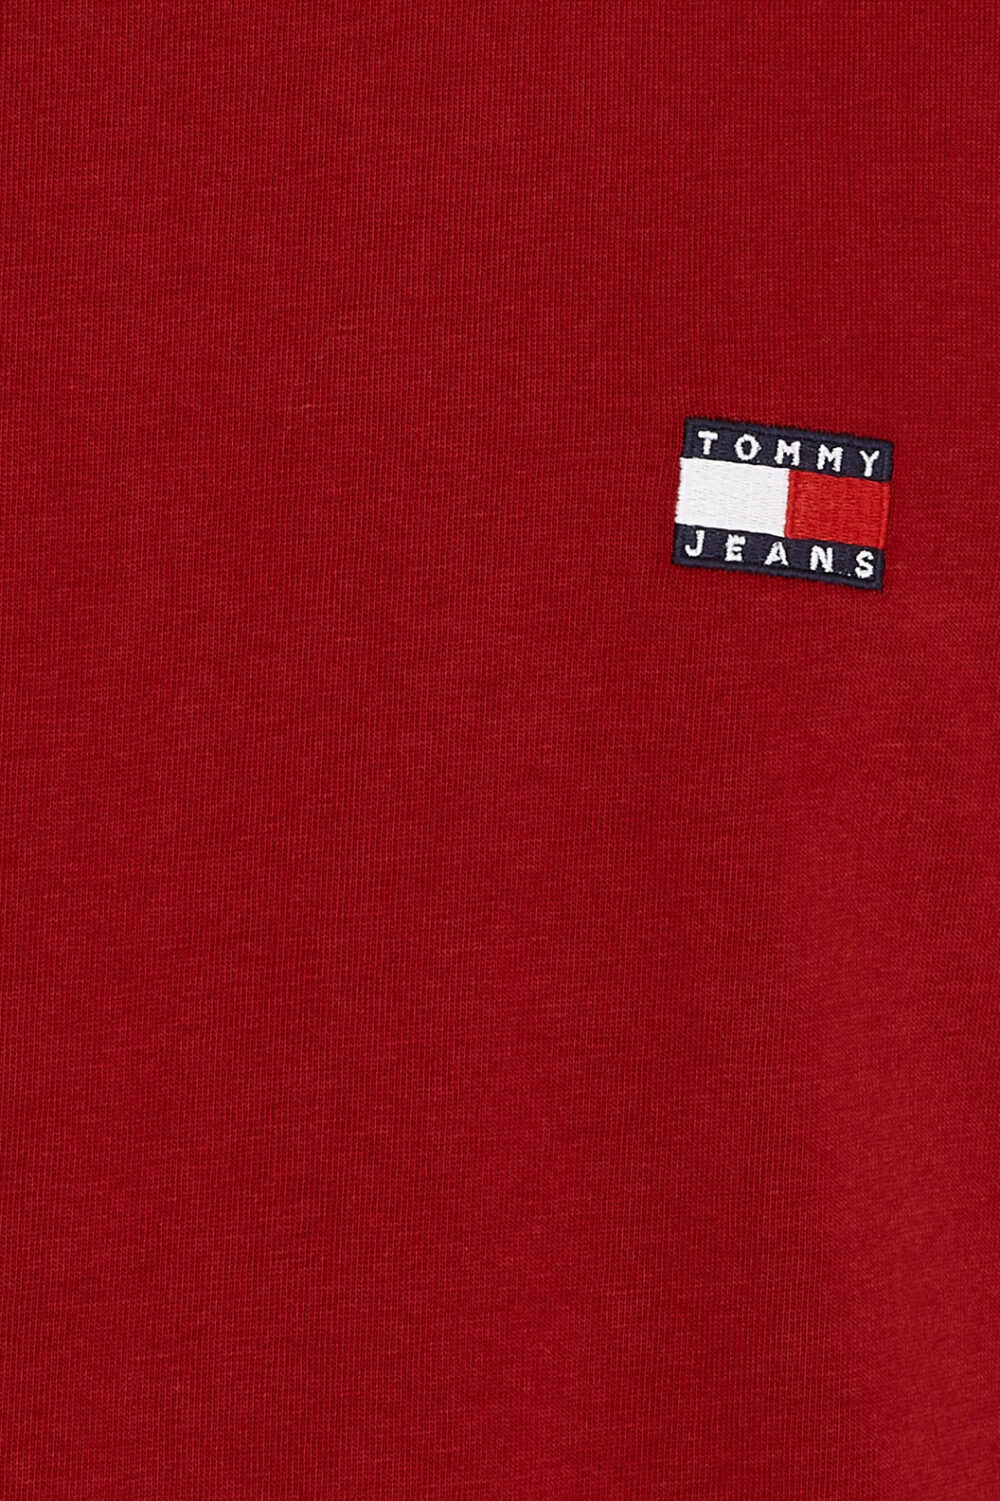 T-shirt Tommy Hilfiger Jeans REG BADGE EX Bordeaux - Foto 3